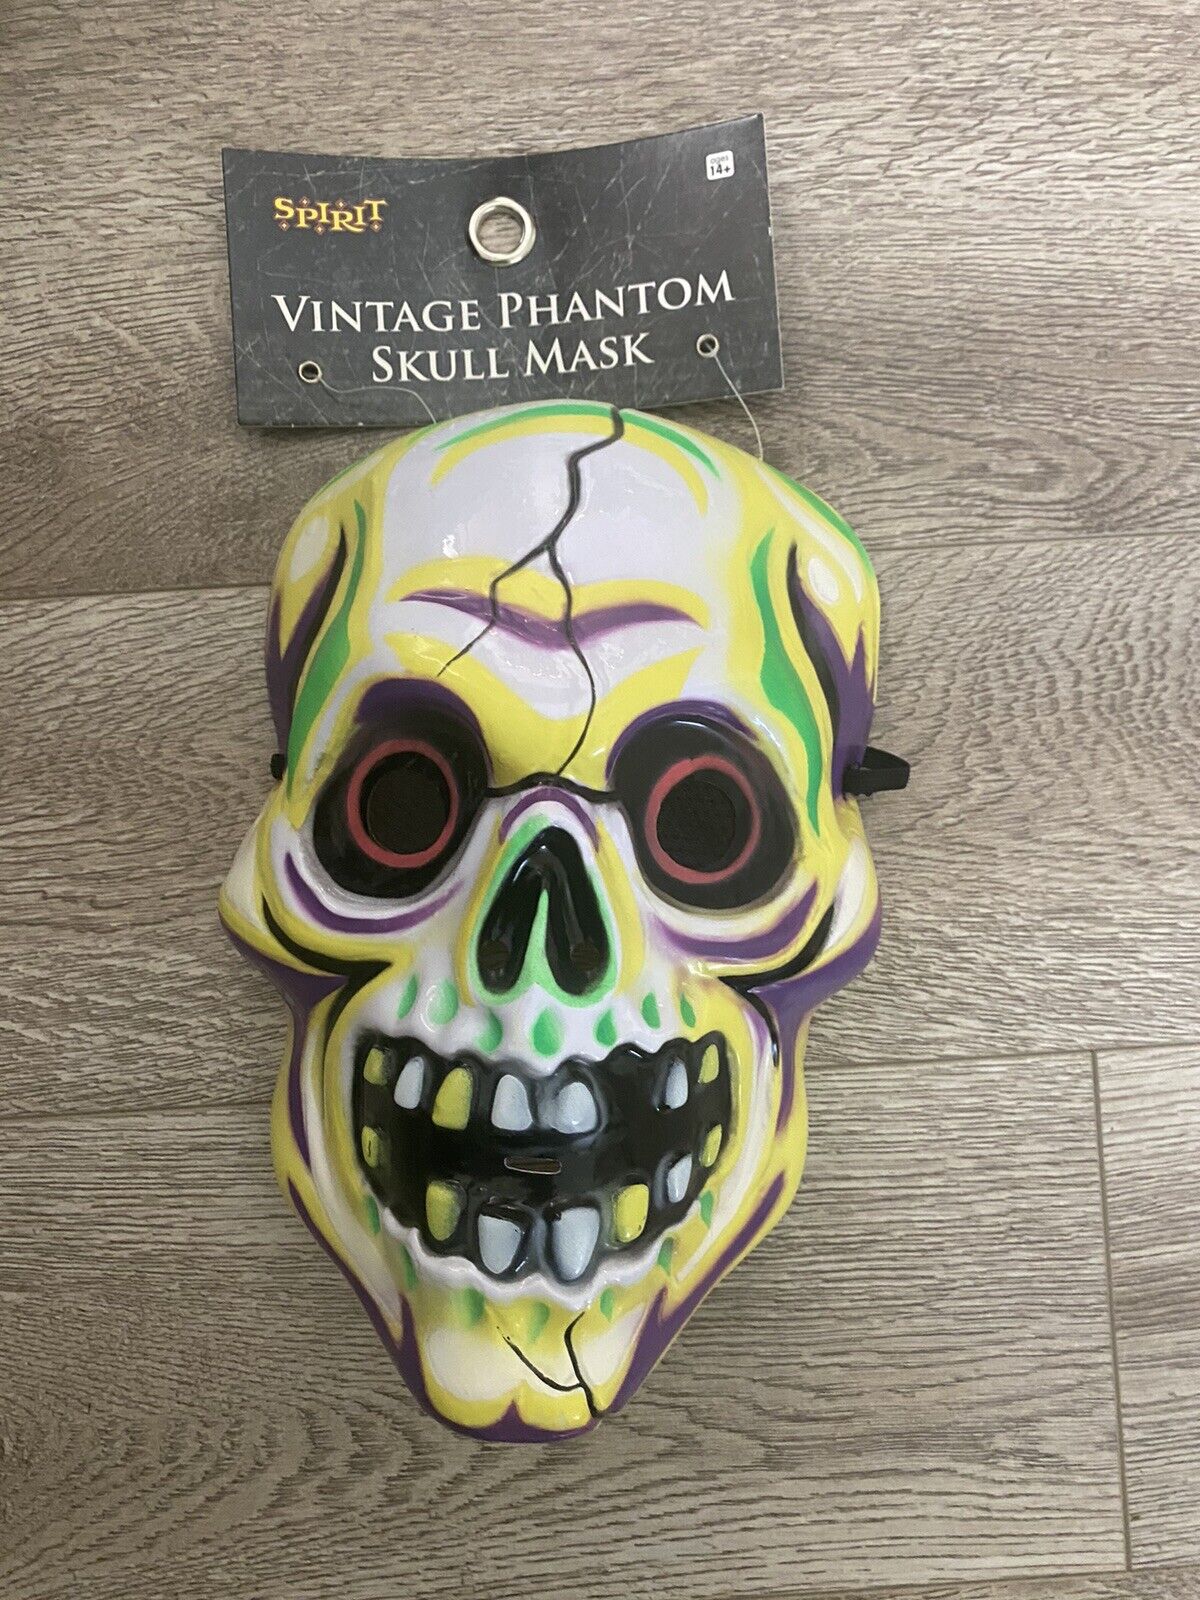 NEW Spirit Halloween Vintage Phantom Skull Mask